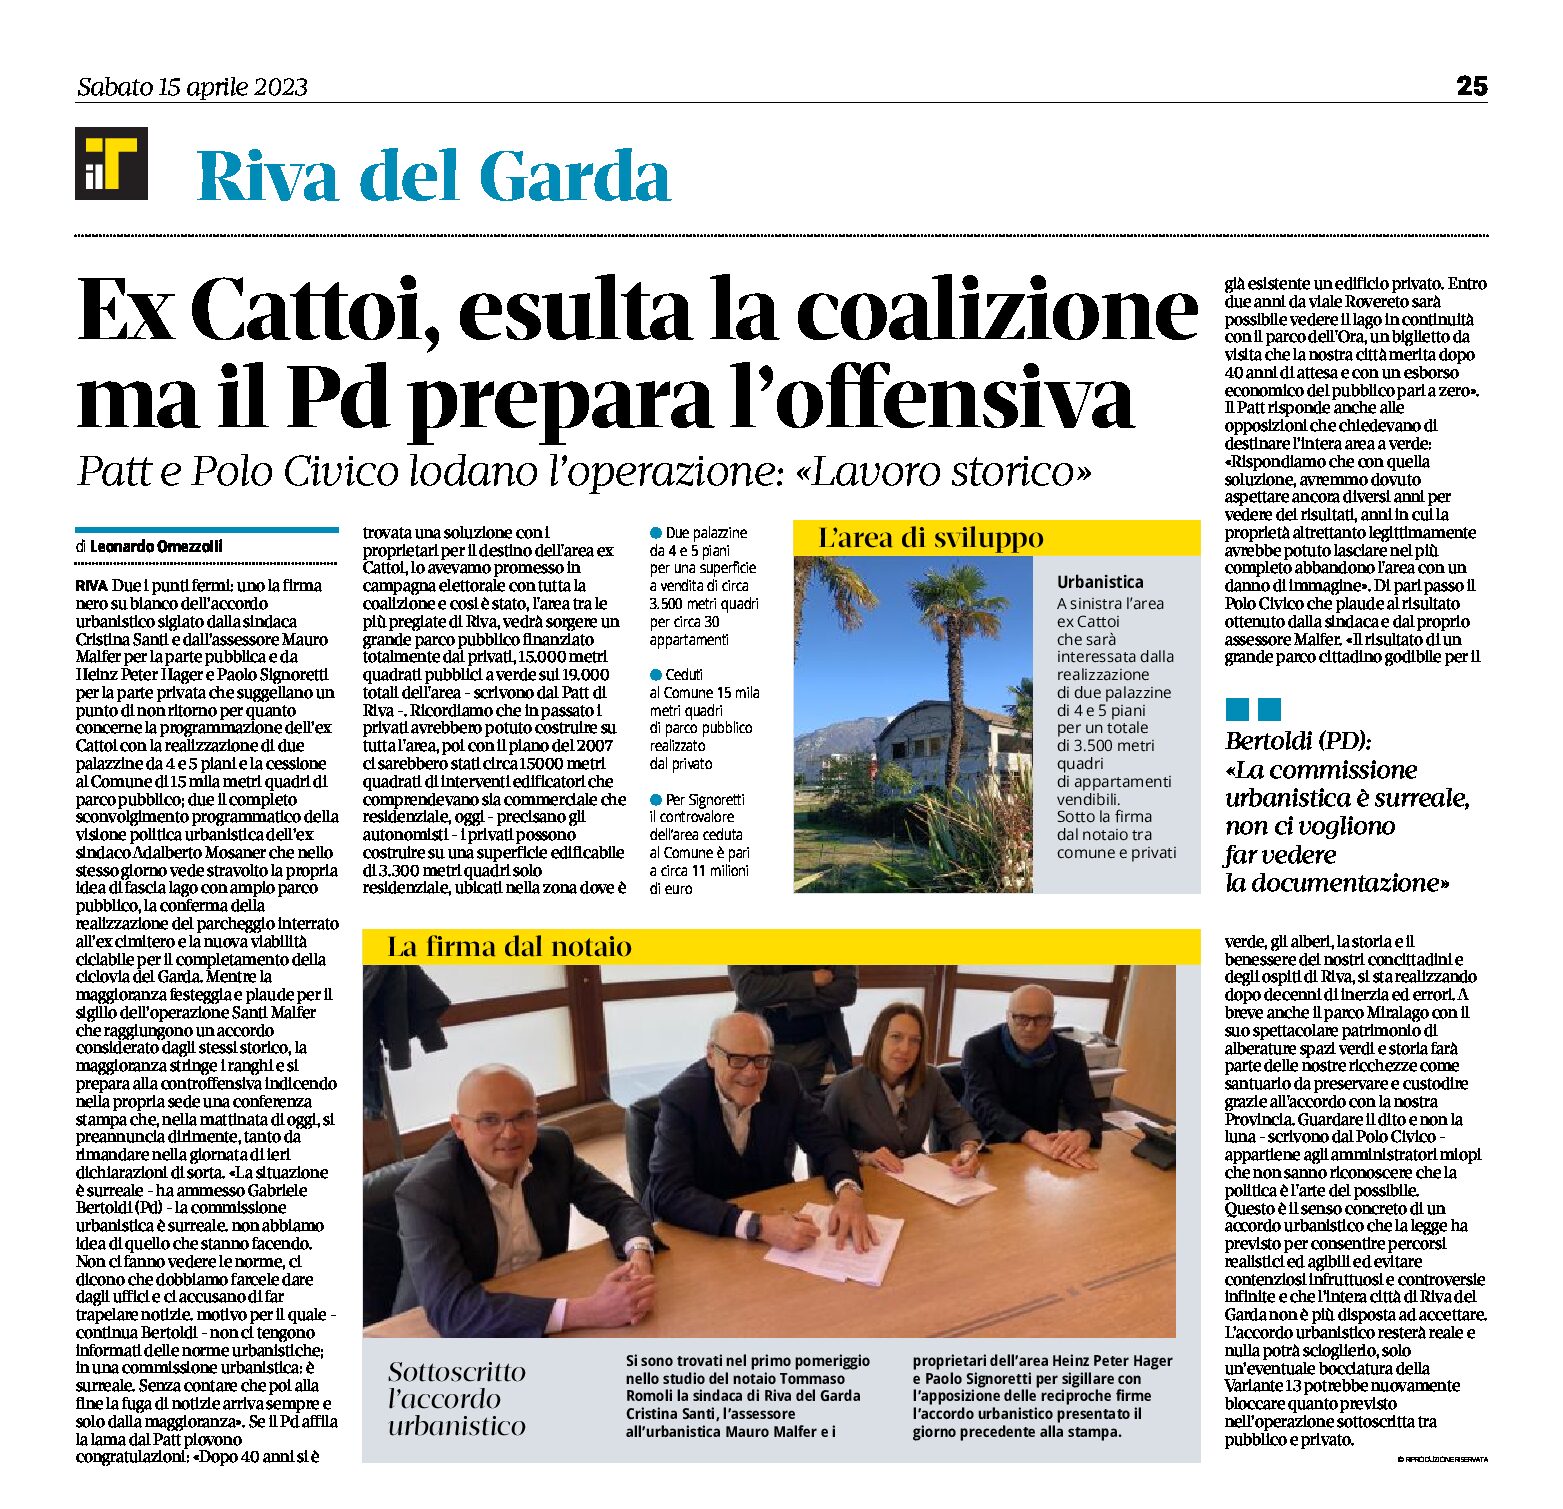 Riva, ex Cattoi: esulta la coalizione, sottoscritto l’accordo urbanistico